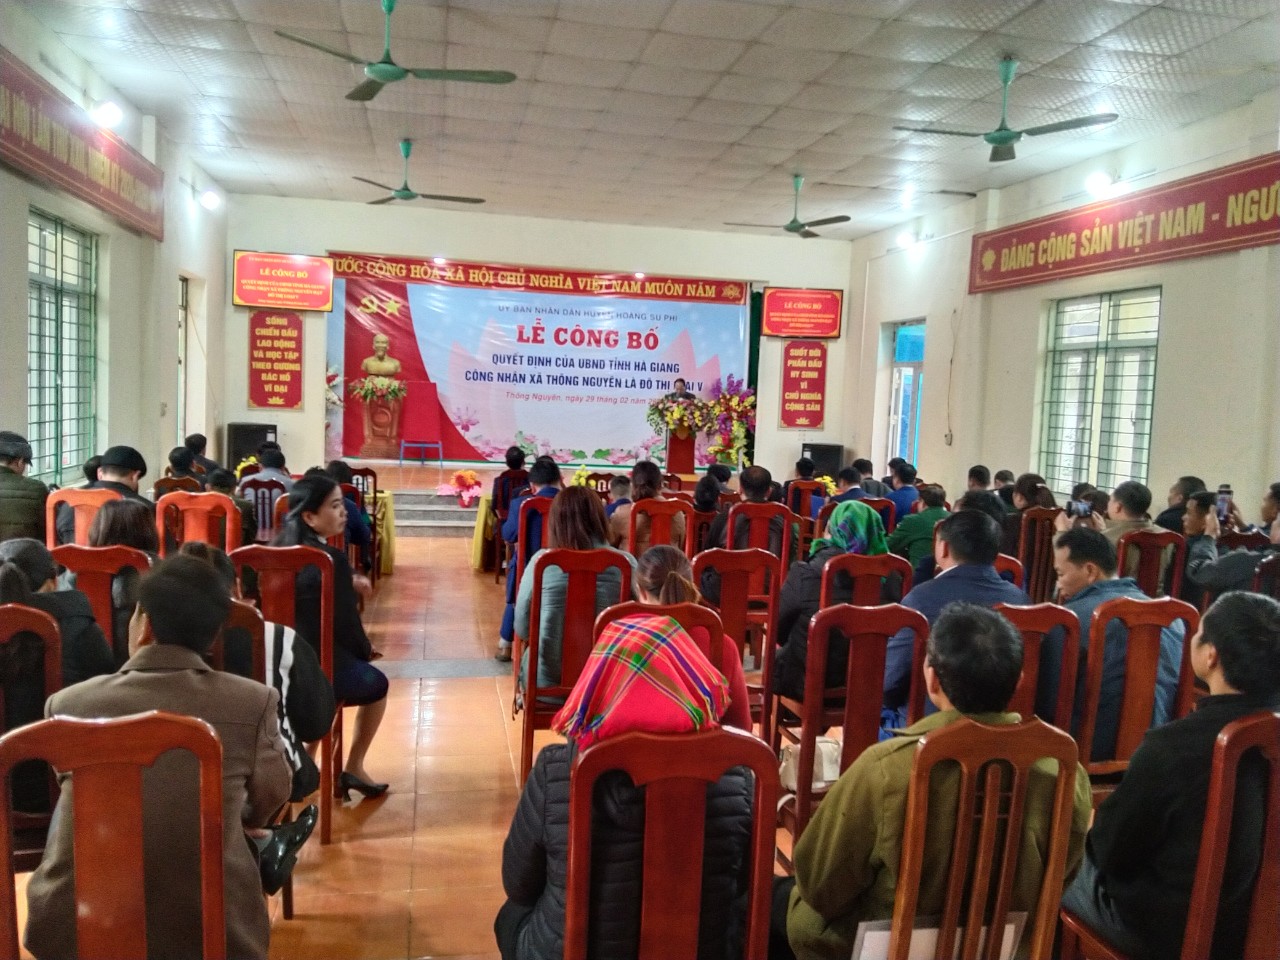 Lễ công bố Quyết định của UBND tỉnh Hà Giang Công nhận xã Thông Nguyên là đô thị loại V